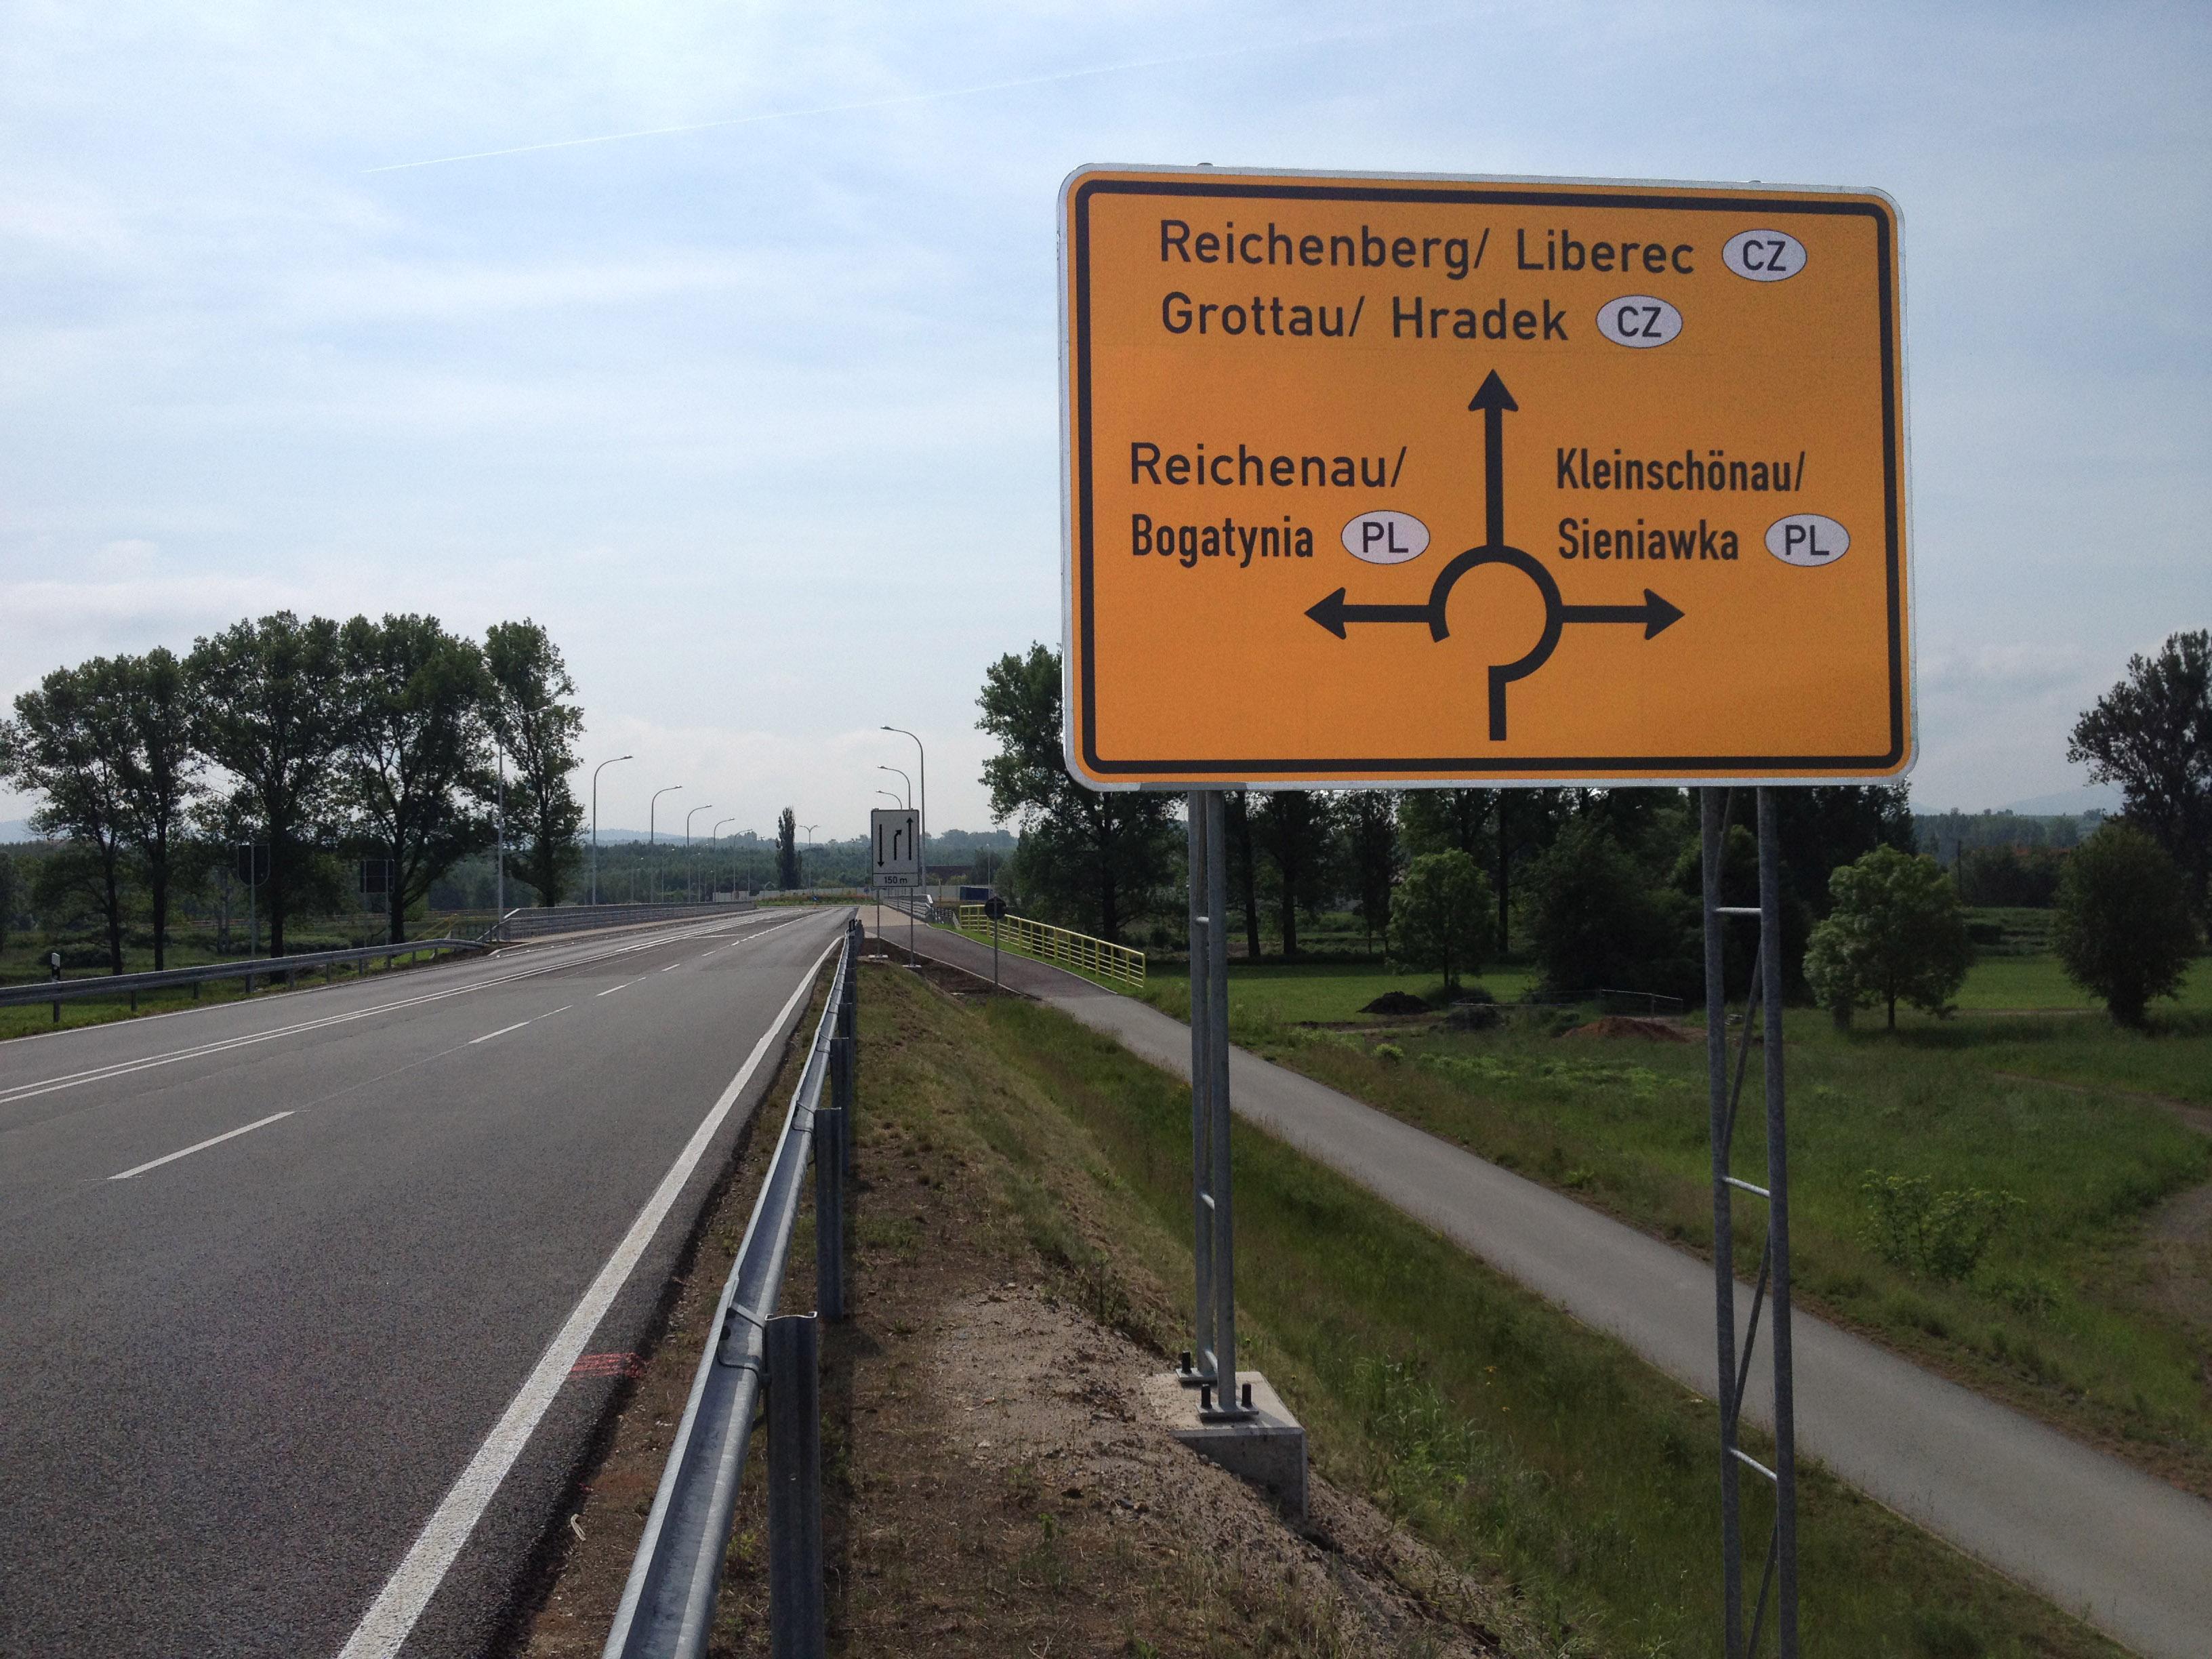 Drogowskaz przed granicą niemiecko-polską na drodze B178 k. Sieniawki z lokalnymi endonimami i egzonimami. niemieckimi (fot. Hoover5555, źródło: Wikimedia)